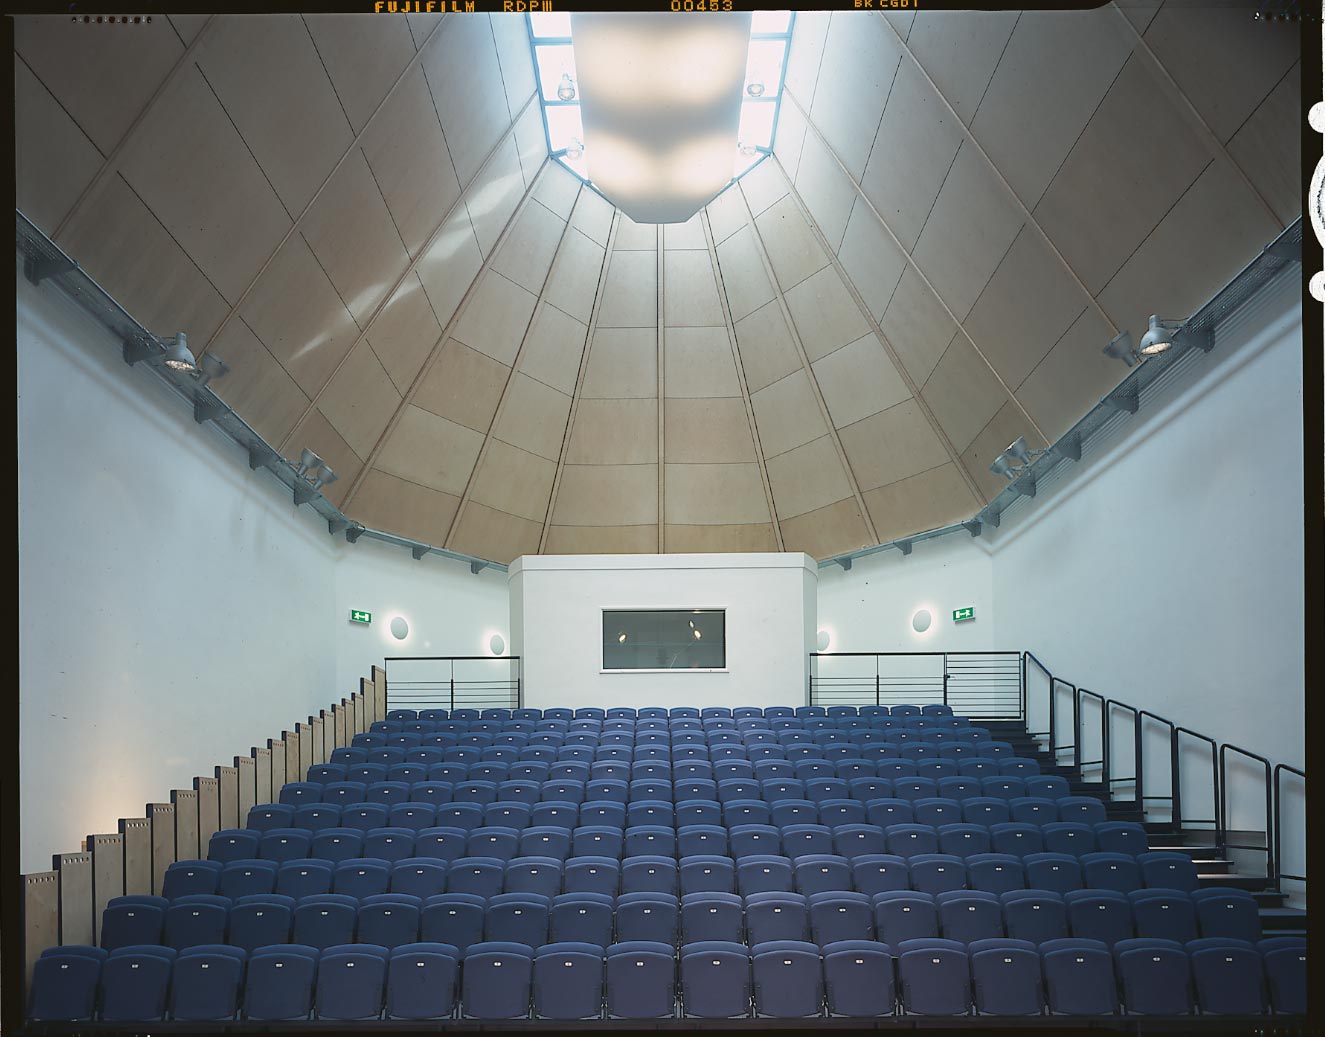 Shrewsbury School Music School - Auditorium interior